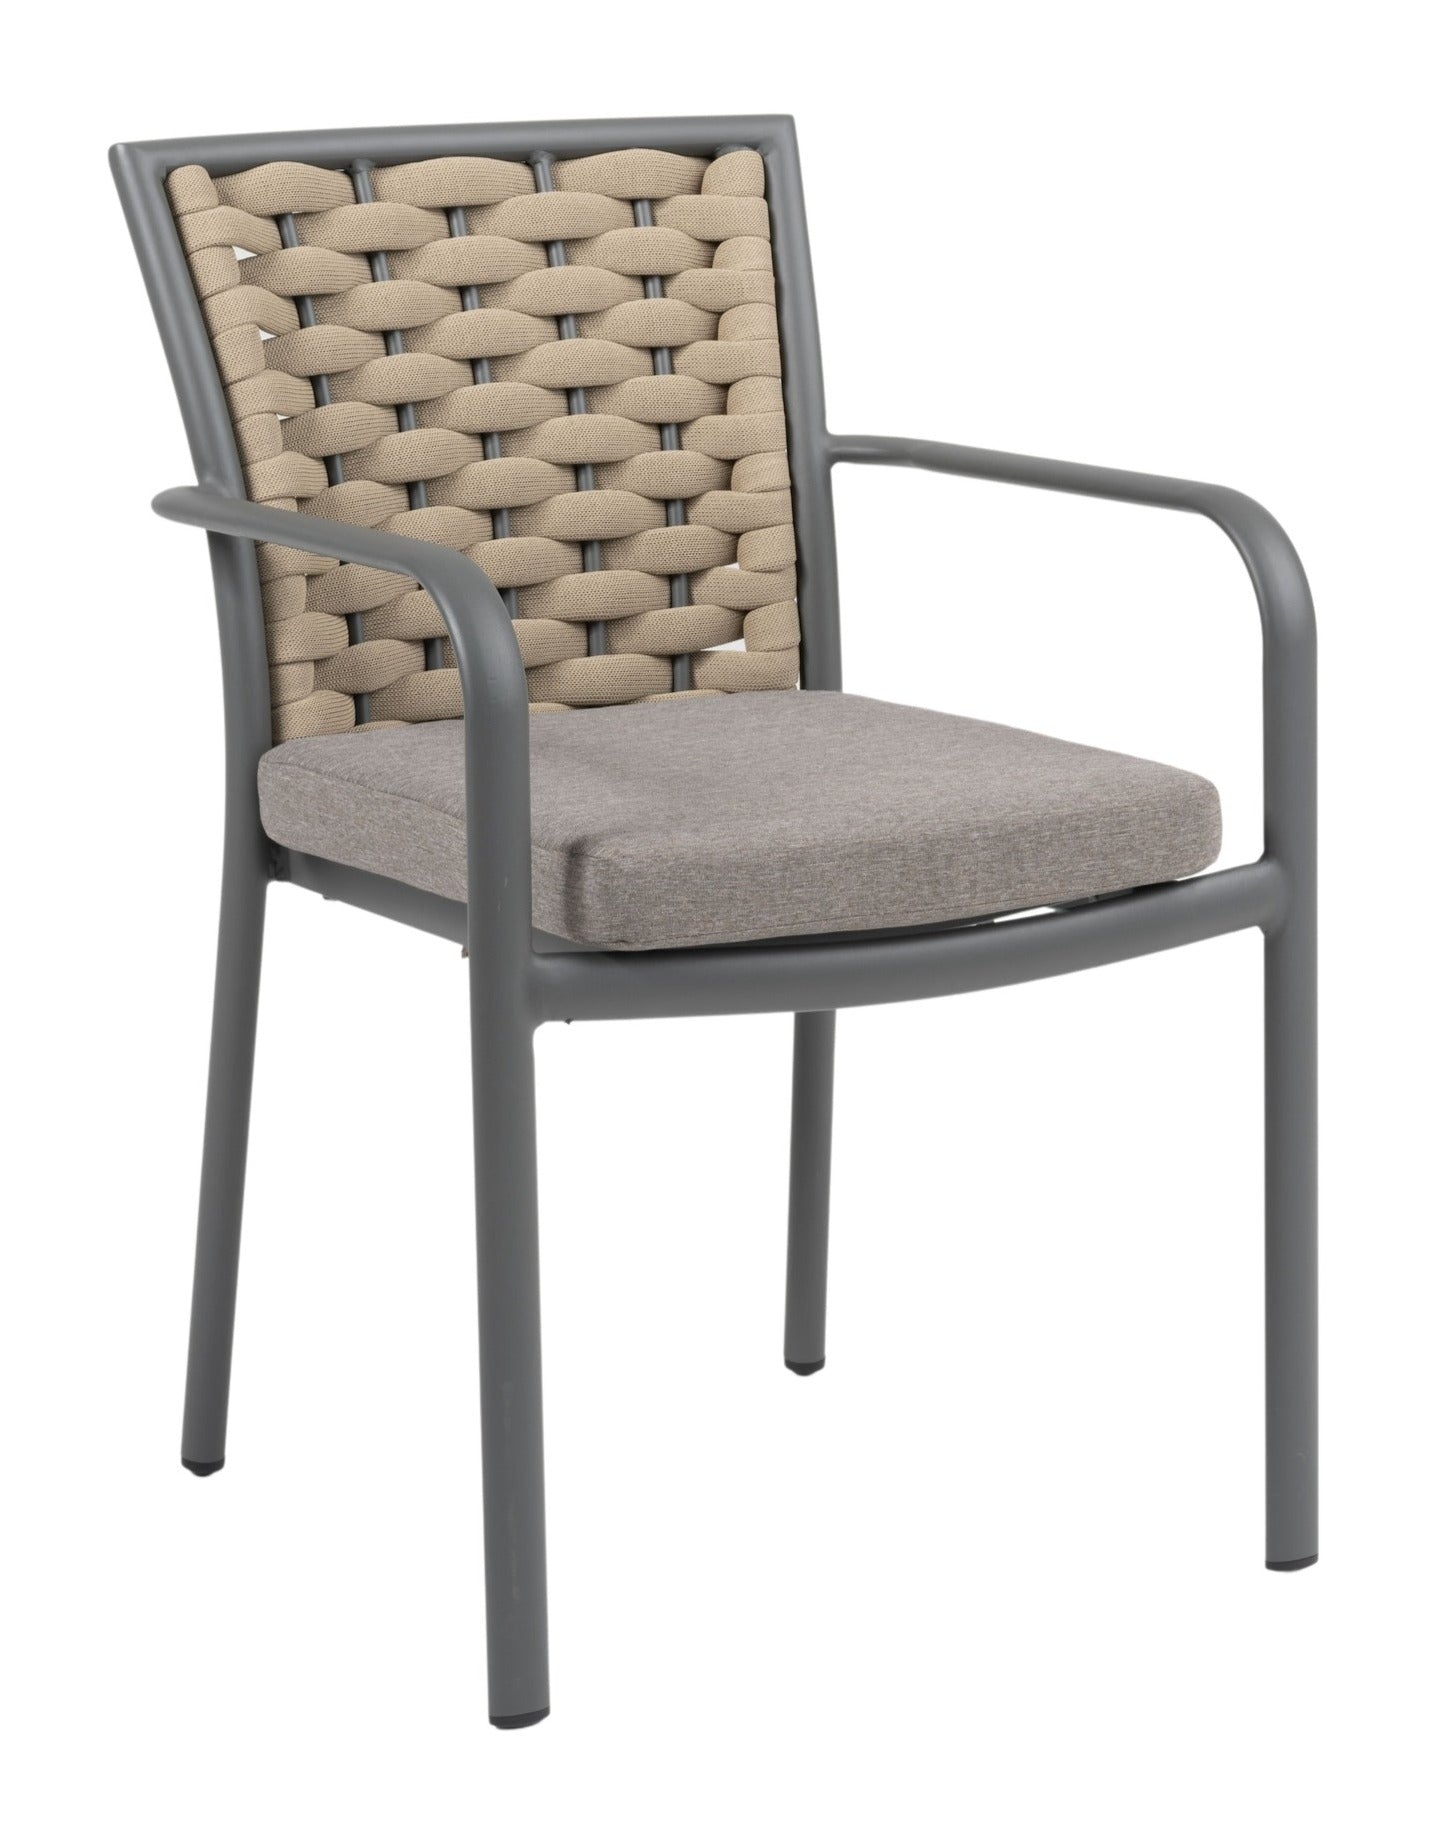 Eleganter 'Clara' Armstuhl mit grauem Metallgestell und taupefarbenen, feuchtigkeitsresistenten Textilschnüren, inklusive passendem Sitzkissen, erhältlich bei Gartenmoebelshop.at - mit weißem Hintergrund